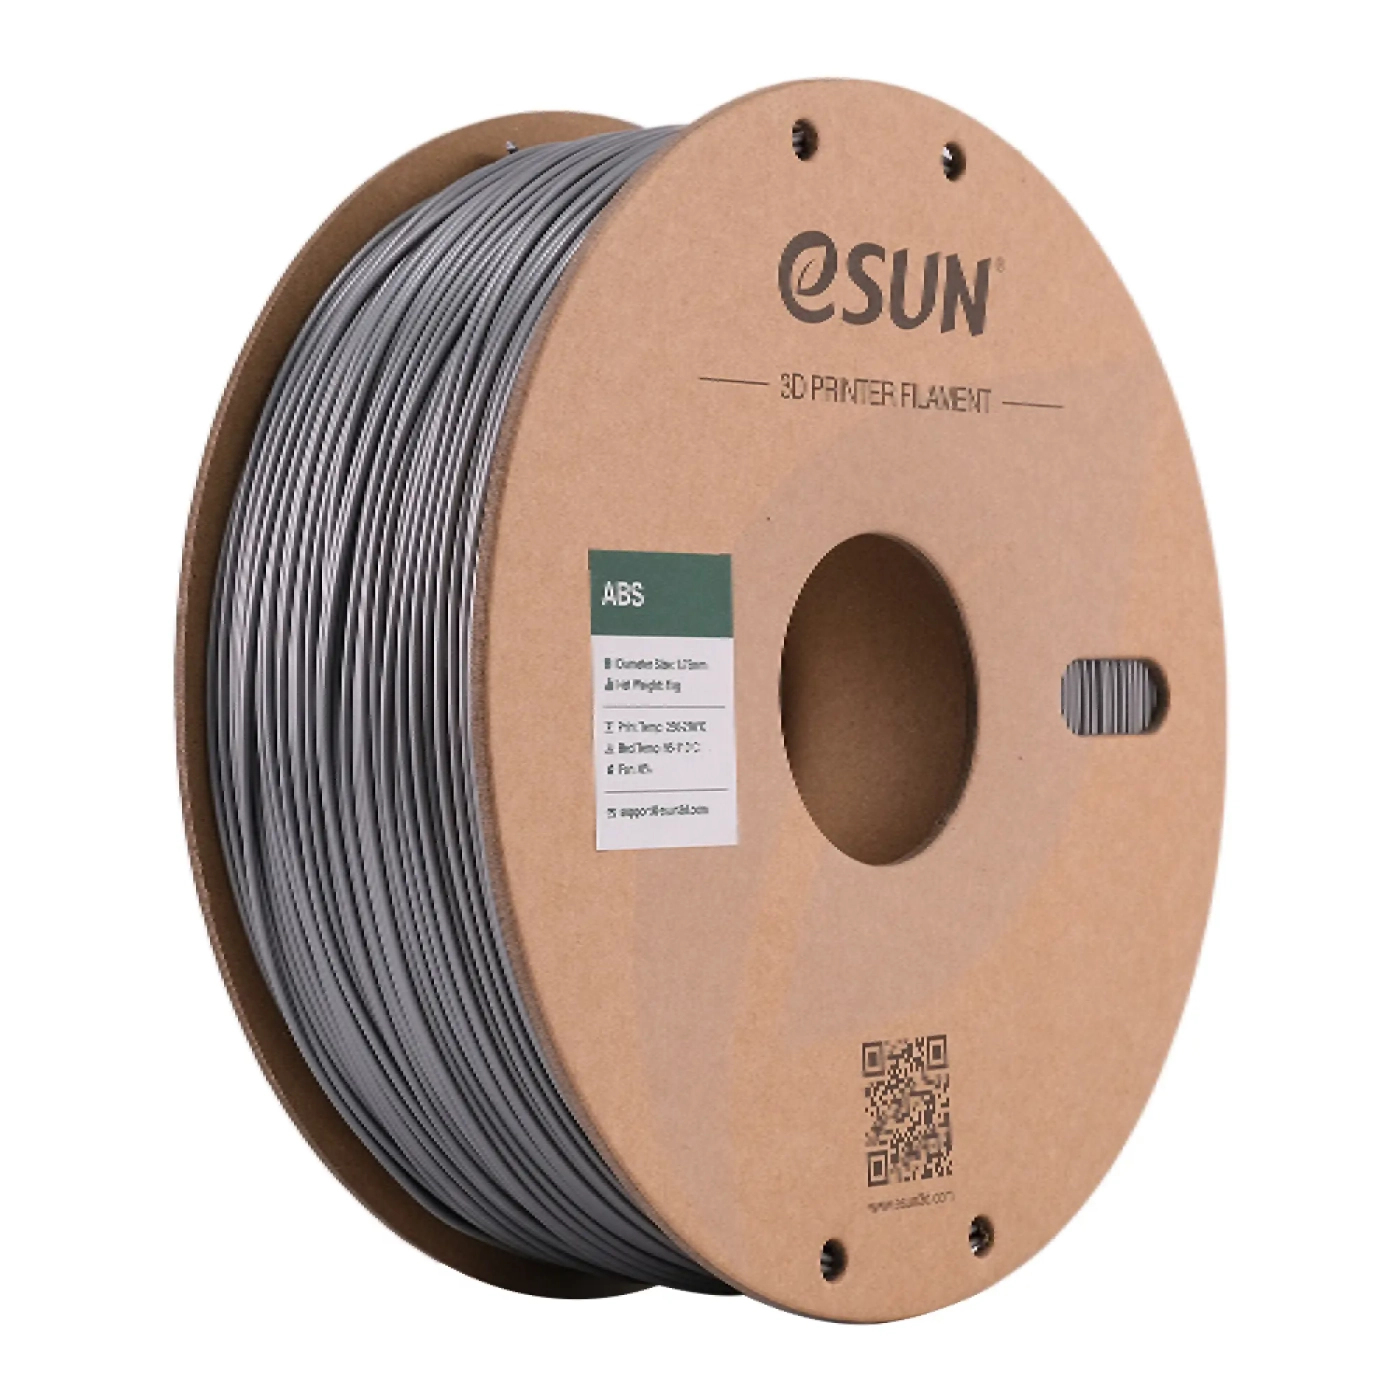 Купить ABS Filament (пластик) для 3D принтера Esun 1кг, 1.75мм, серебряный (ABS-175S1) - фото 1